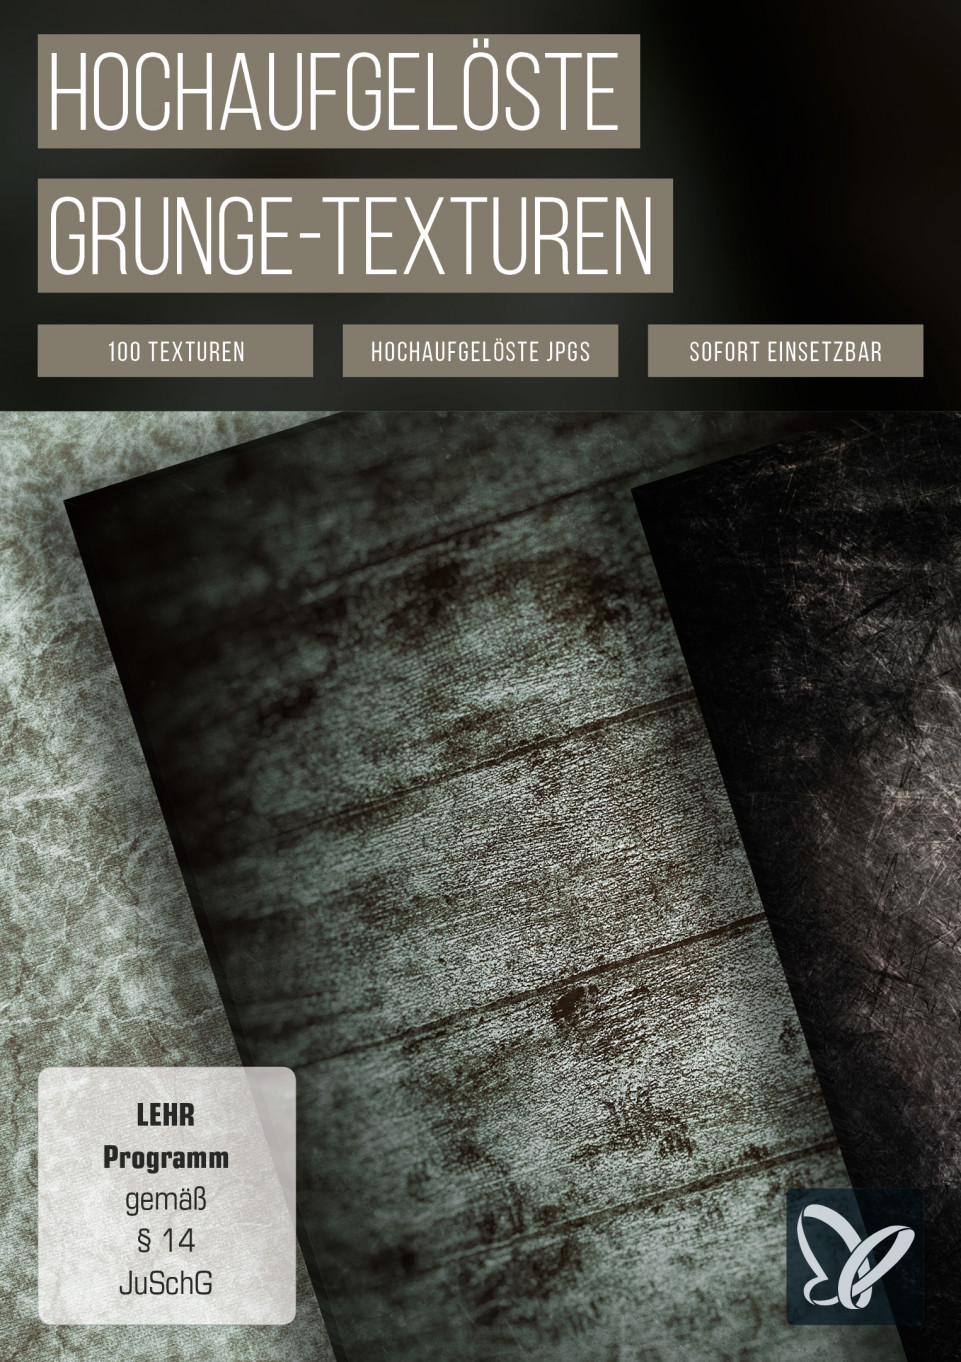 Grunge-Texturen für Backgrounds, Wallpaper & Overlays